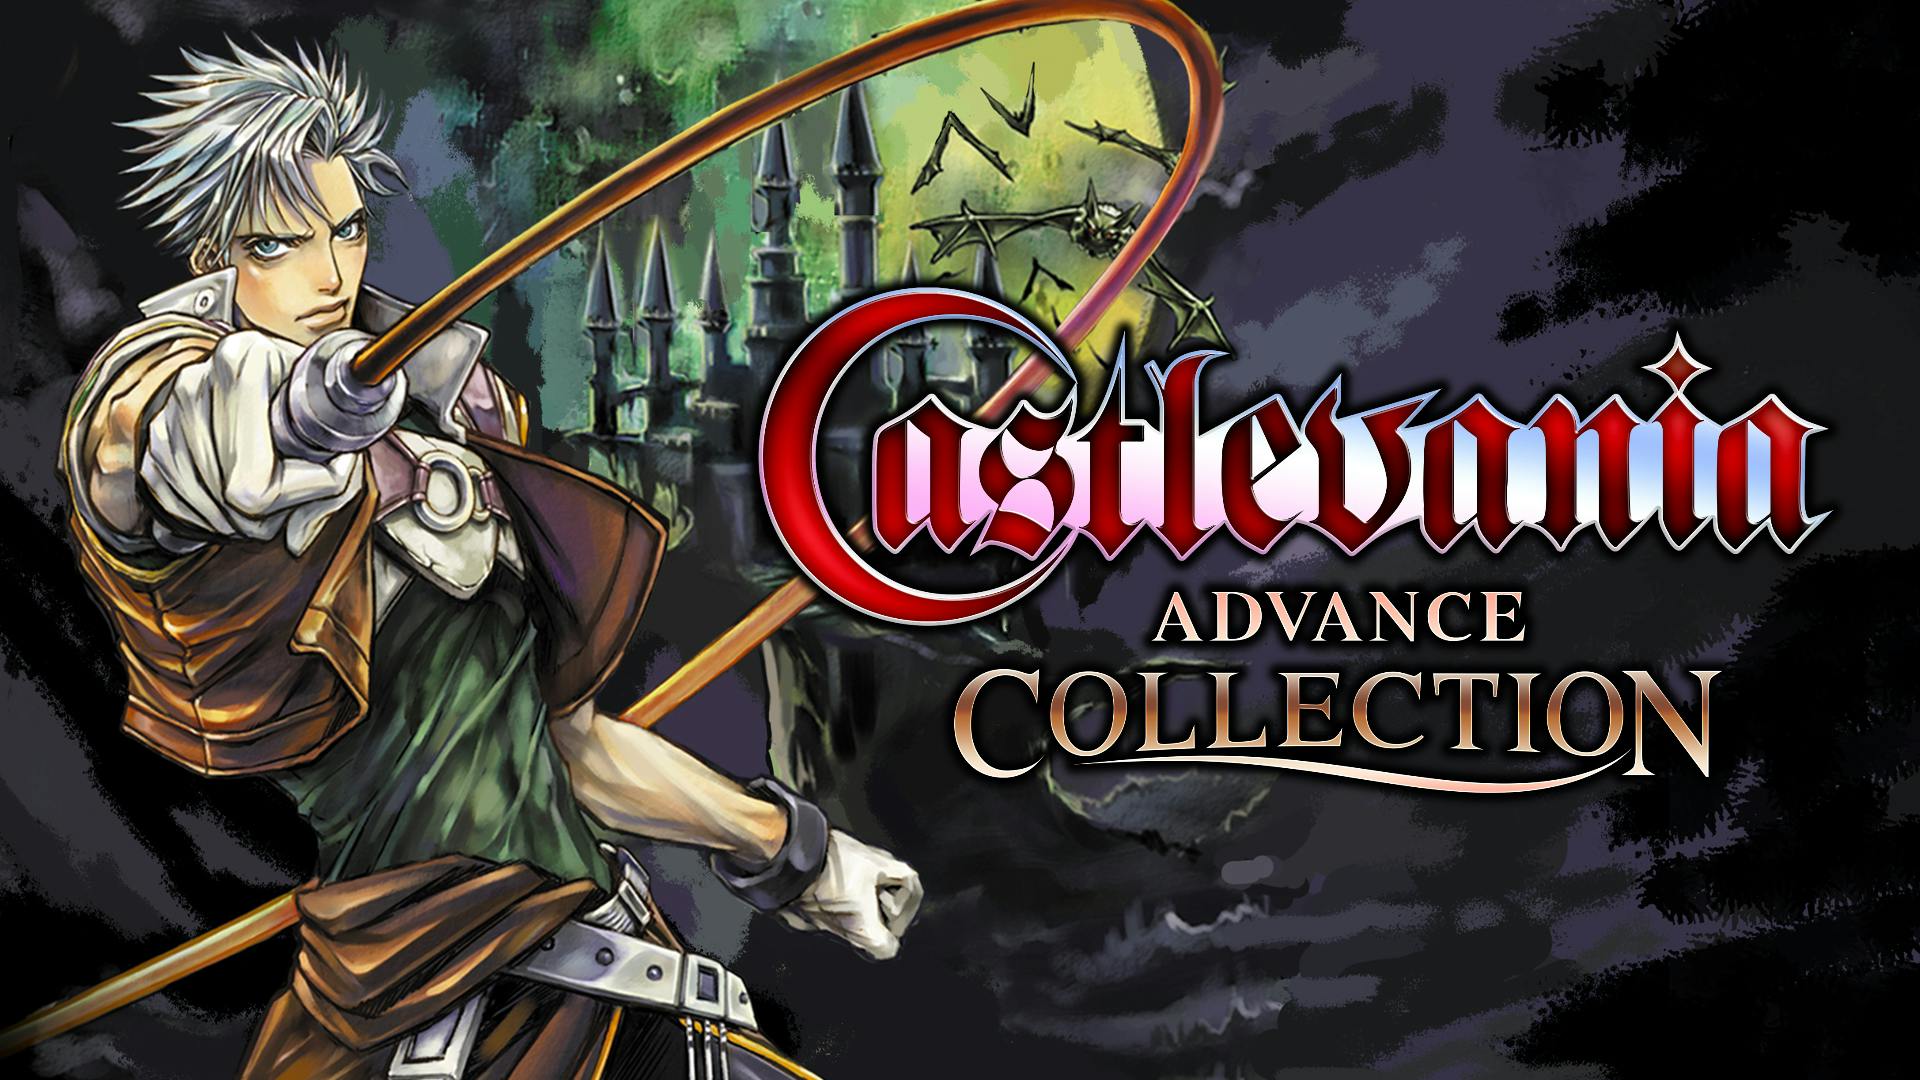 Castlevania advance collection. Castlevania collection. Castlevania Advanced collection. Castlevania Advance. Castlevania Advance collection game.